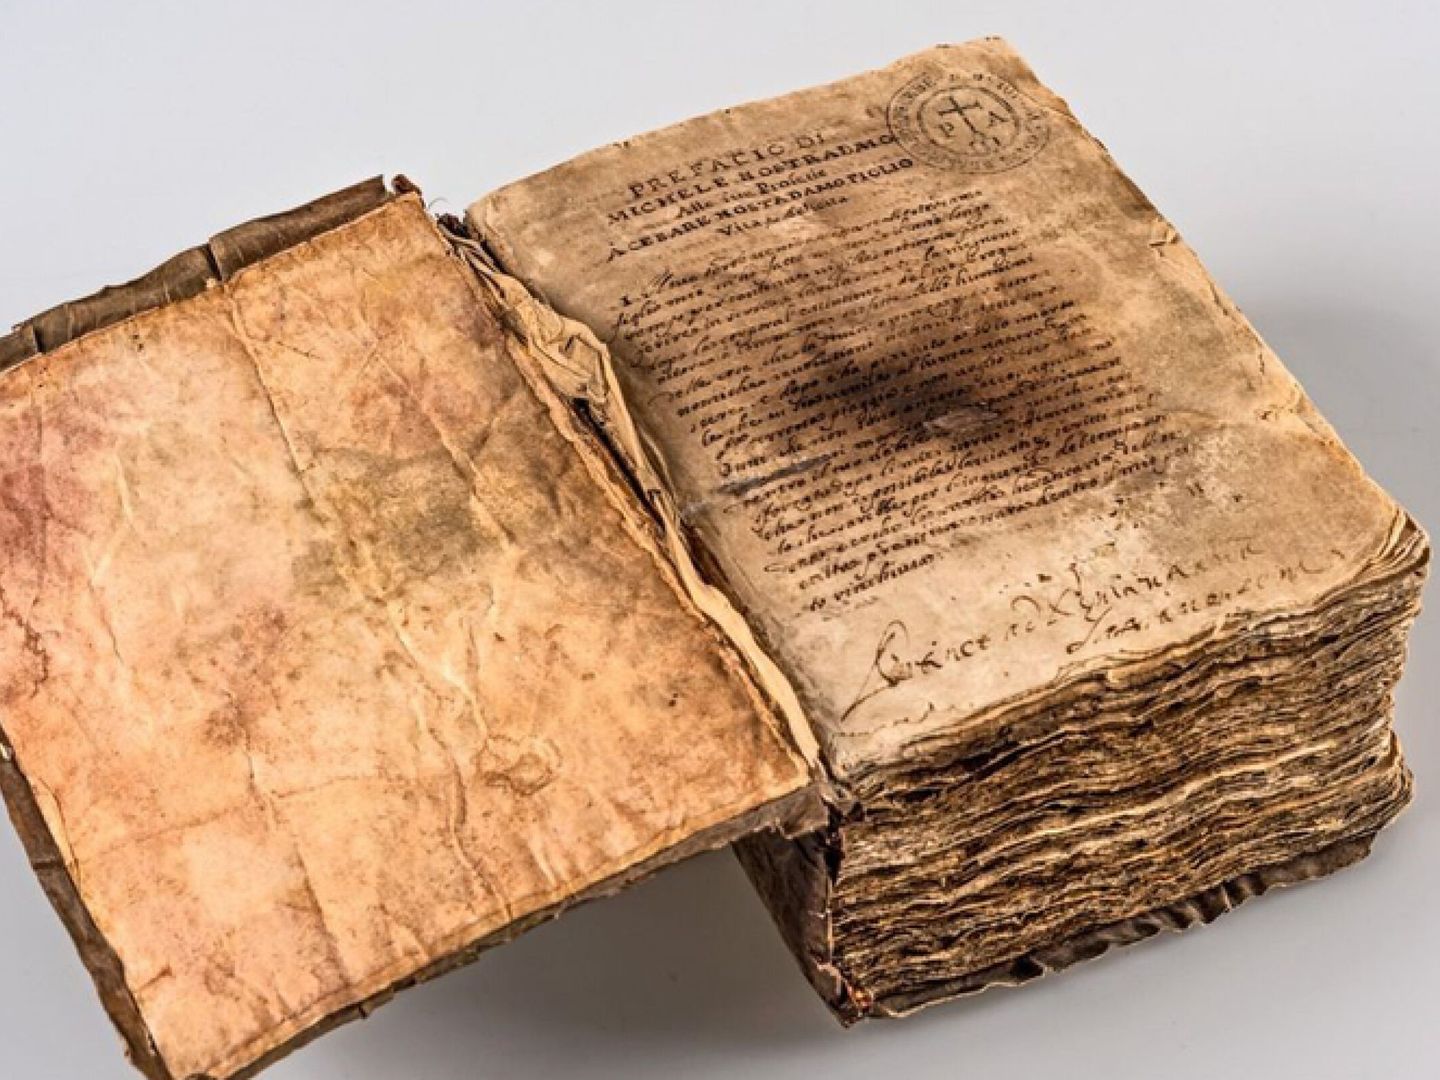 Antiguo manuscrito 'Las profecías de M. Michel' escritas en 1568 por el astrólogo francés Michel de Nostre-Dame. (EFE/Carabinieri)